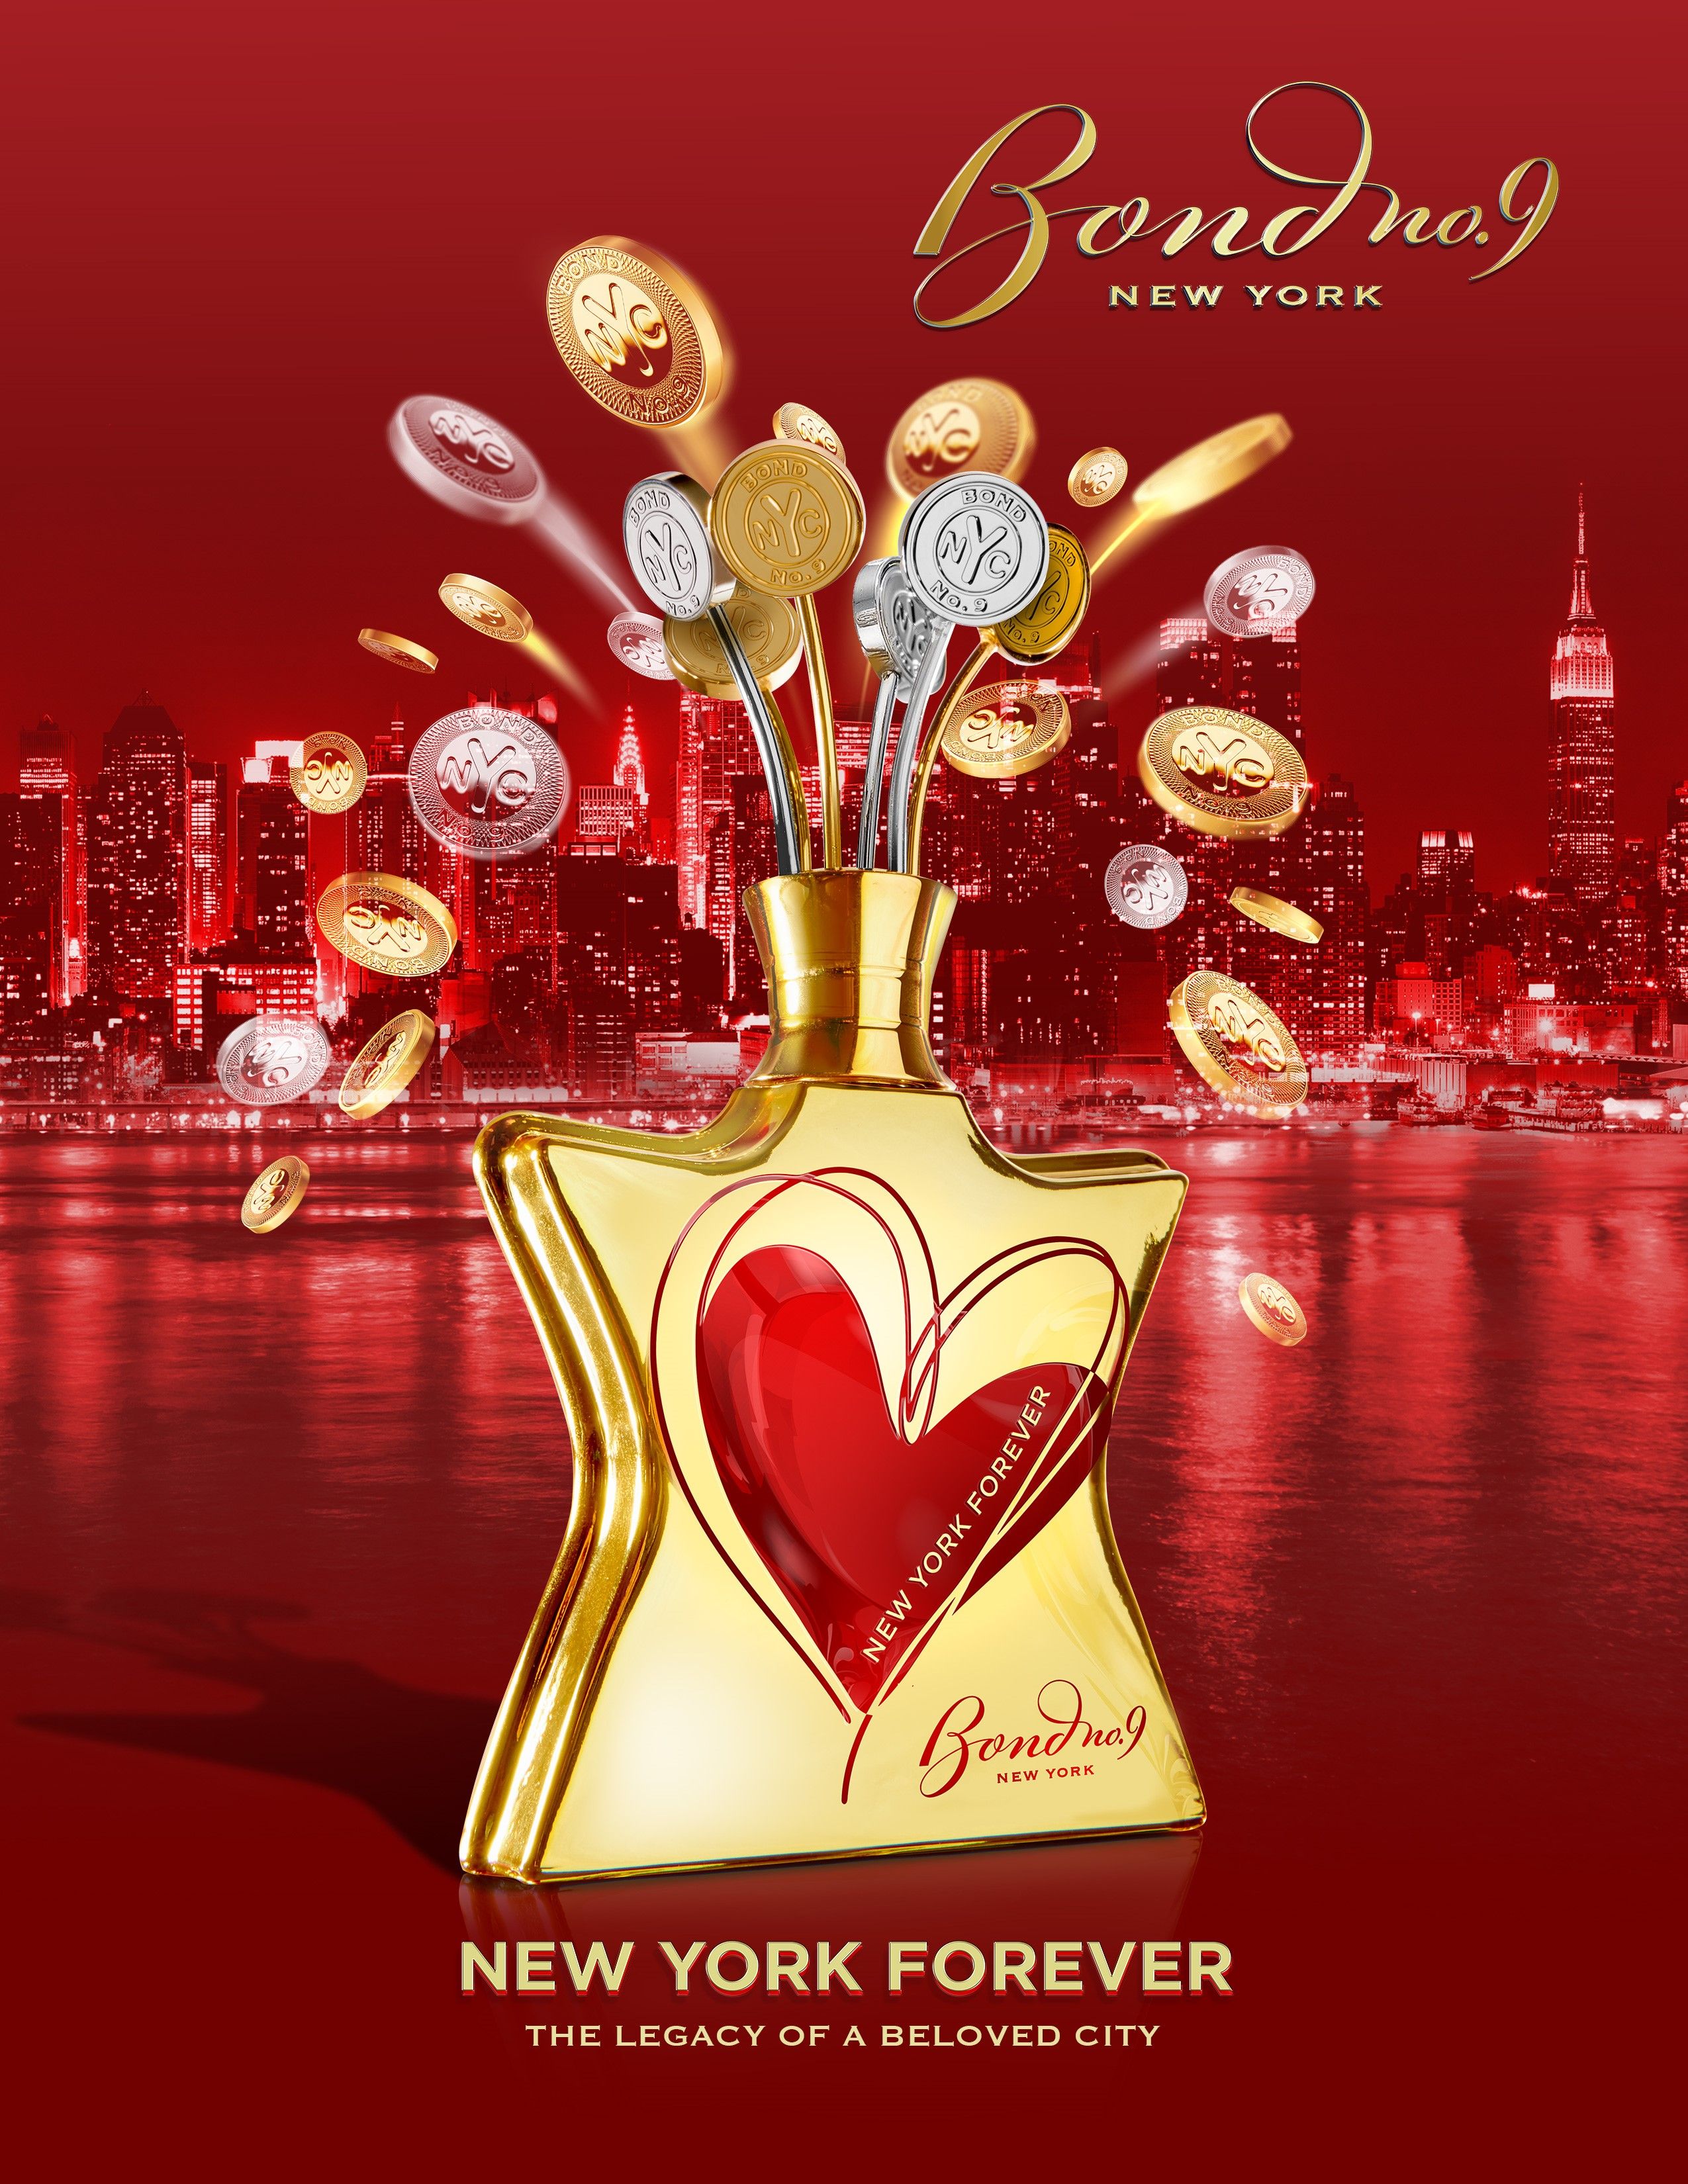 New York Forever Limited Edition Bond No 9 Parfum - ein neues Parfum ...